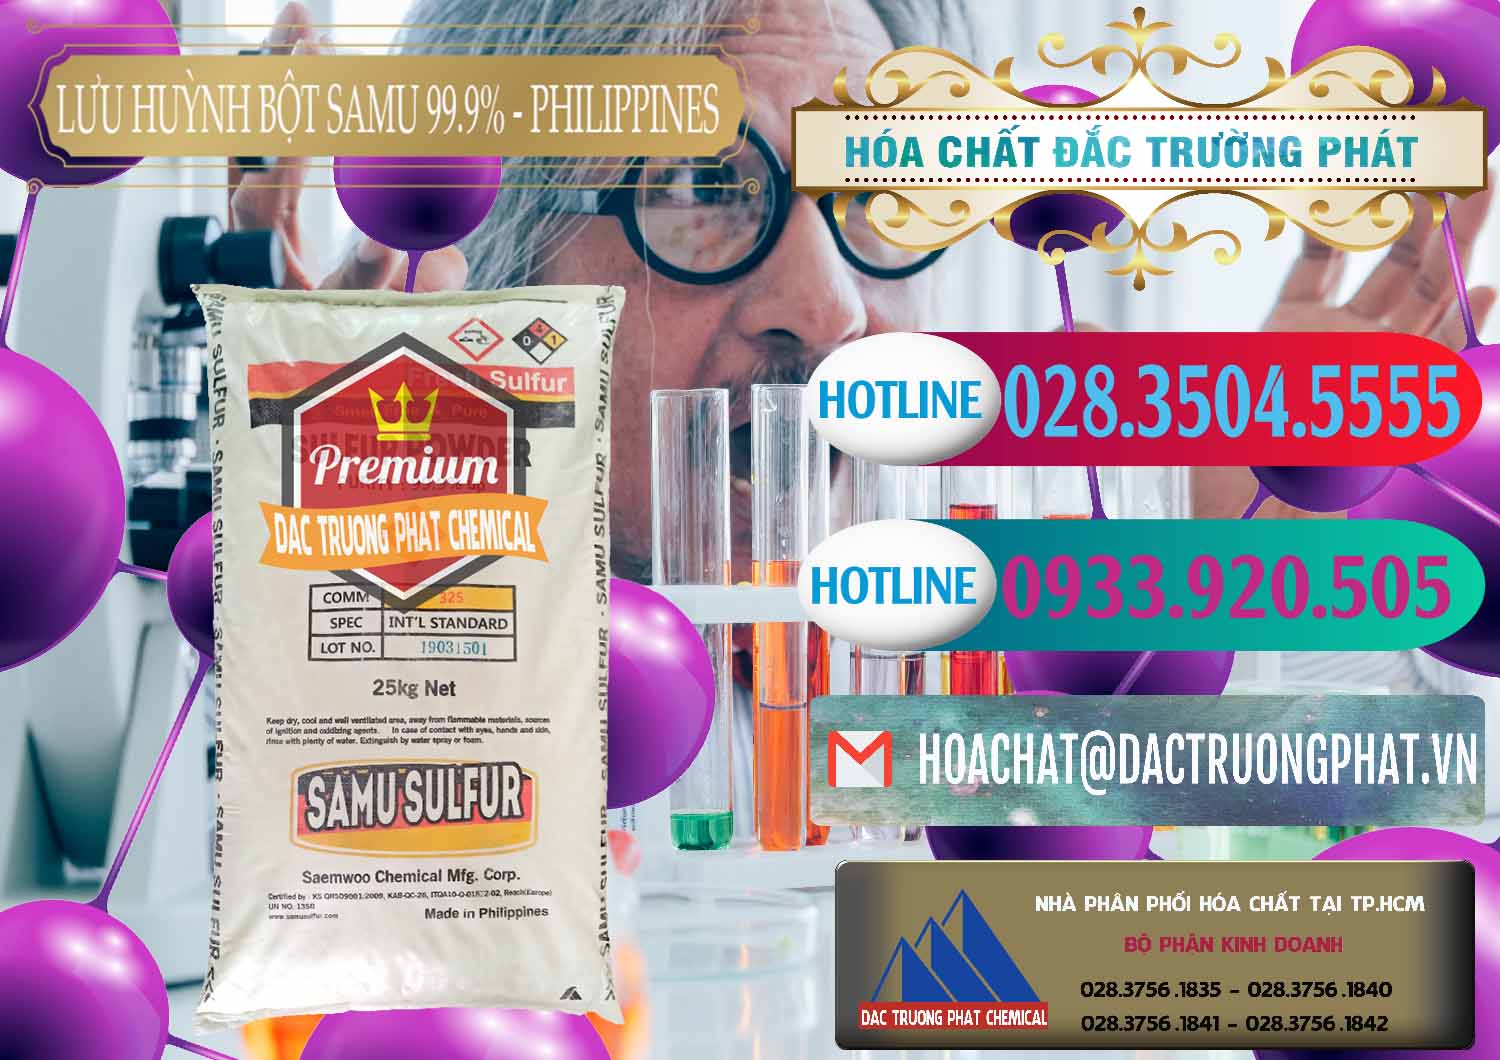 Nơi chuyên bán & phân phối Lưu huỳnh Bột - Sulfur Powder Samu Philippines - 0201 - Cung cấp và nhập khẩu hóa chất tại TP.HCM - truongphat.vn